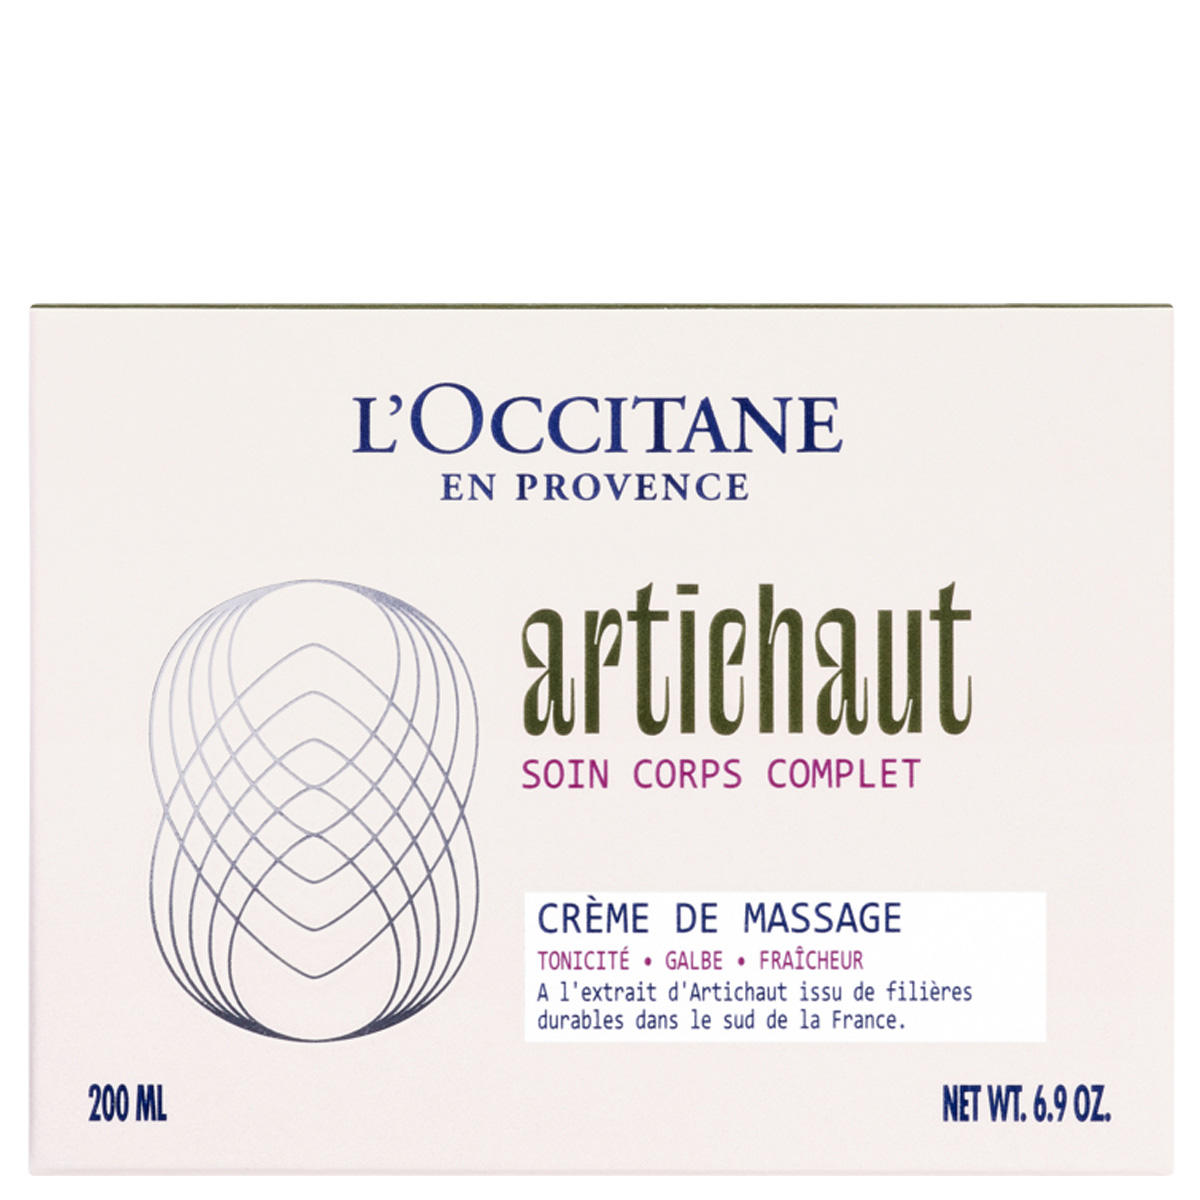 L'Occitane Artichaut Crema corpo Crème de Massage 200 ml - 4